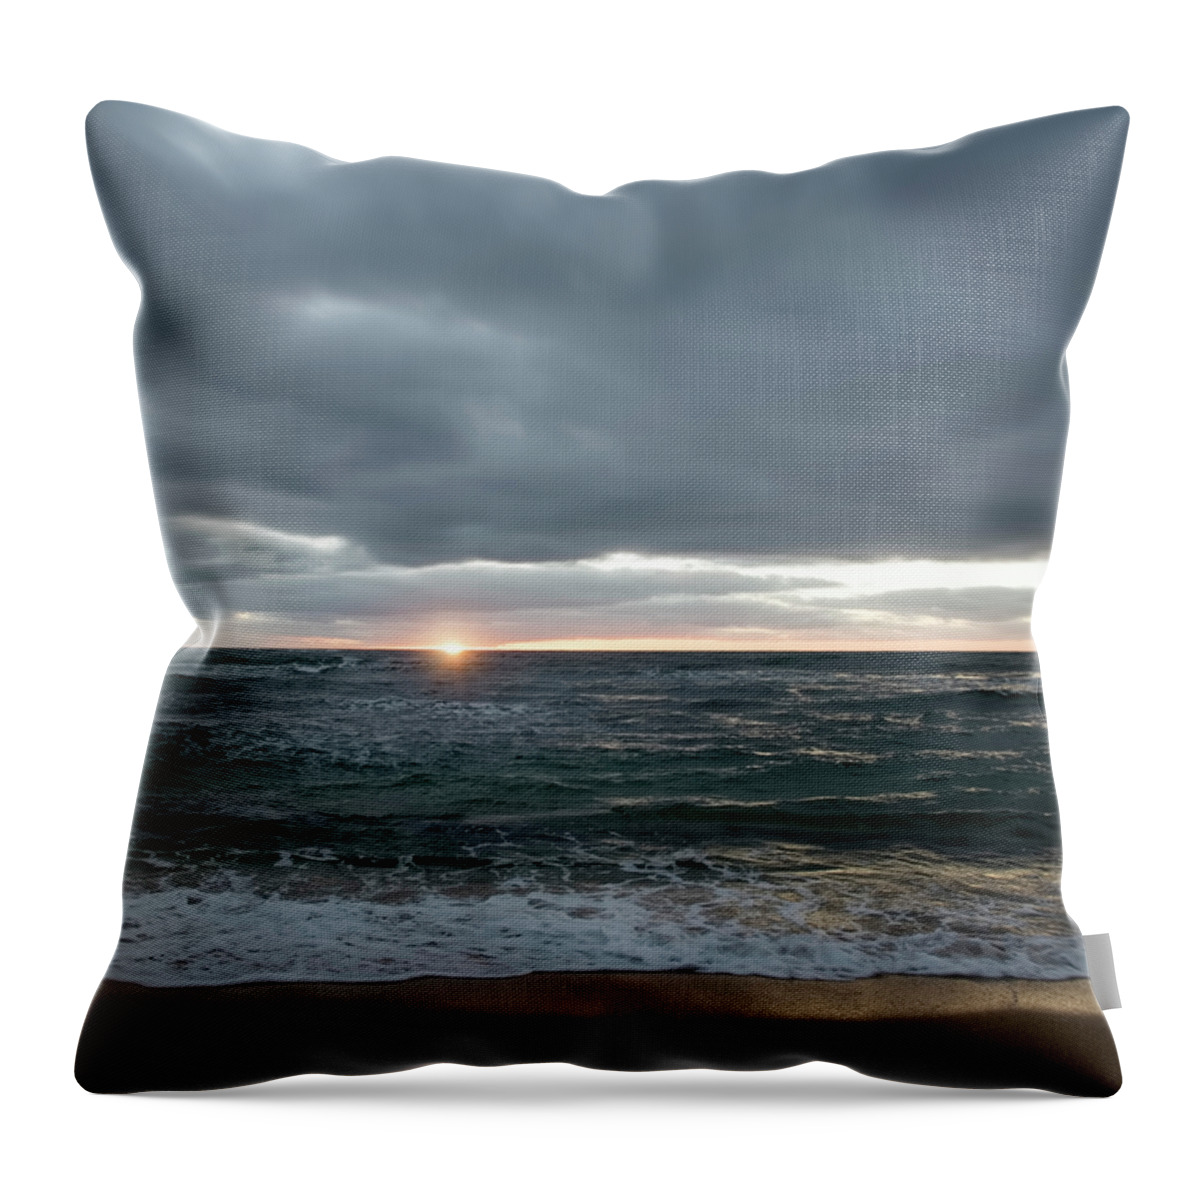 Sunrise On Kauai Throw Pillow featuring the photograph Sunrise on Kauai by Steven Michael